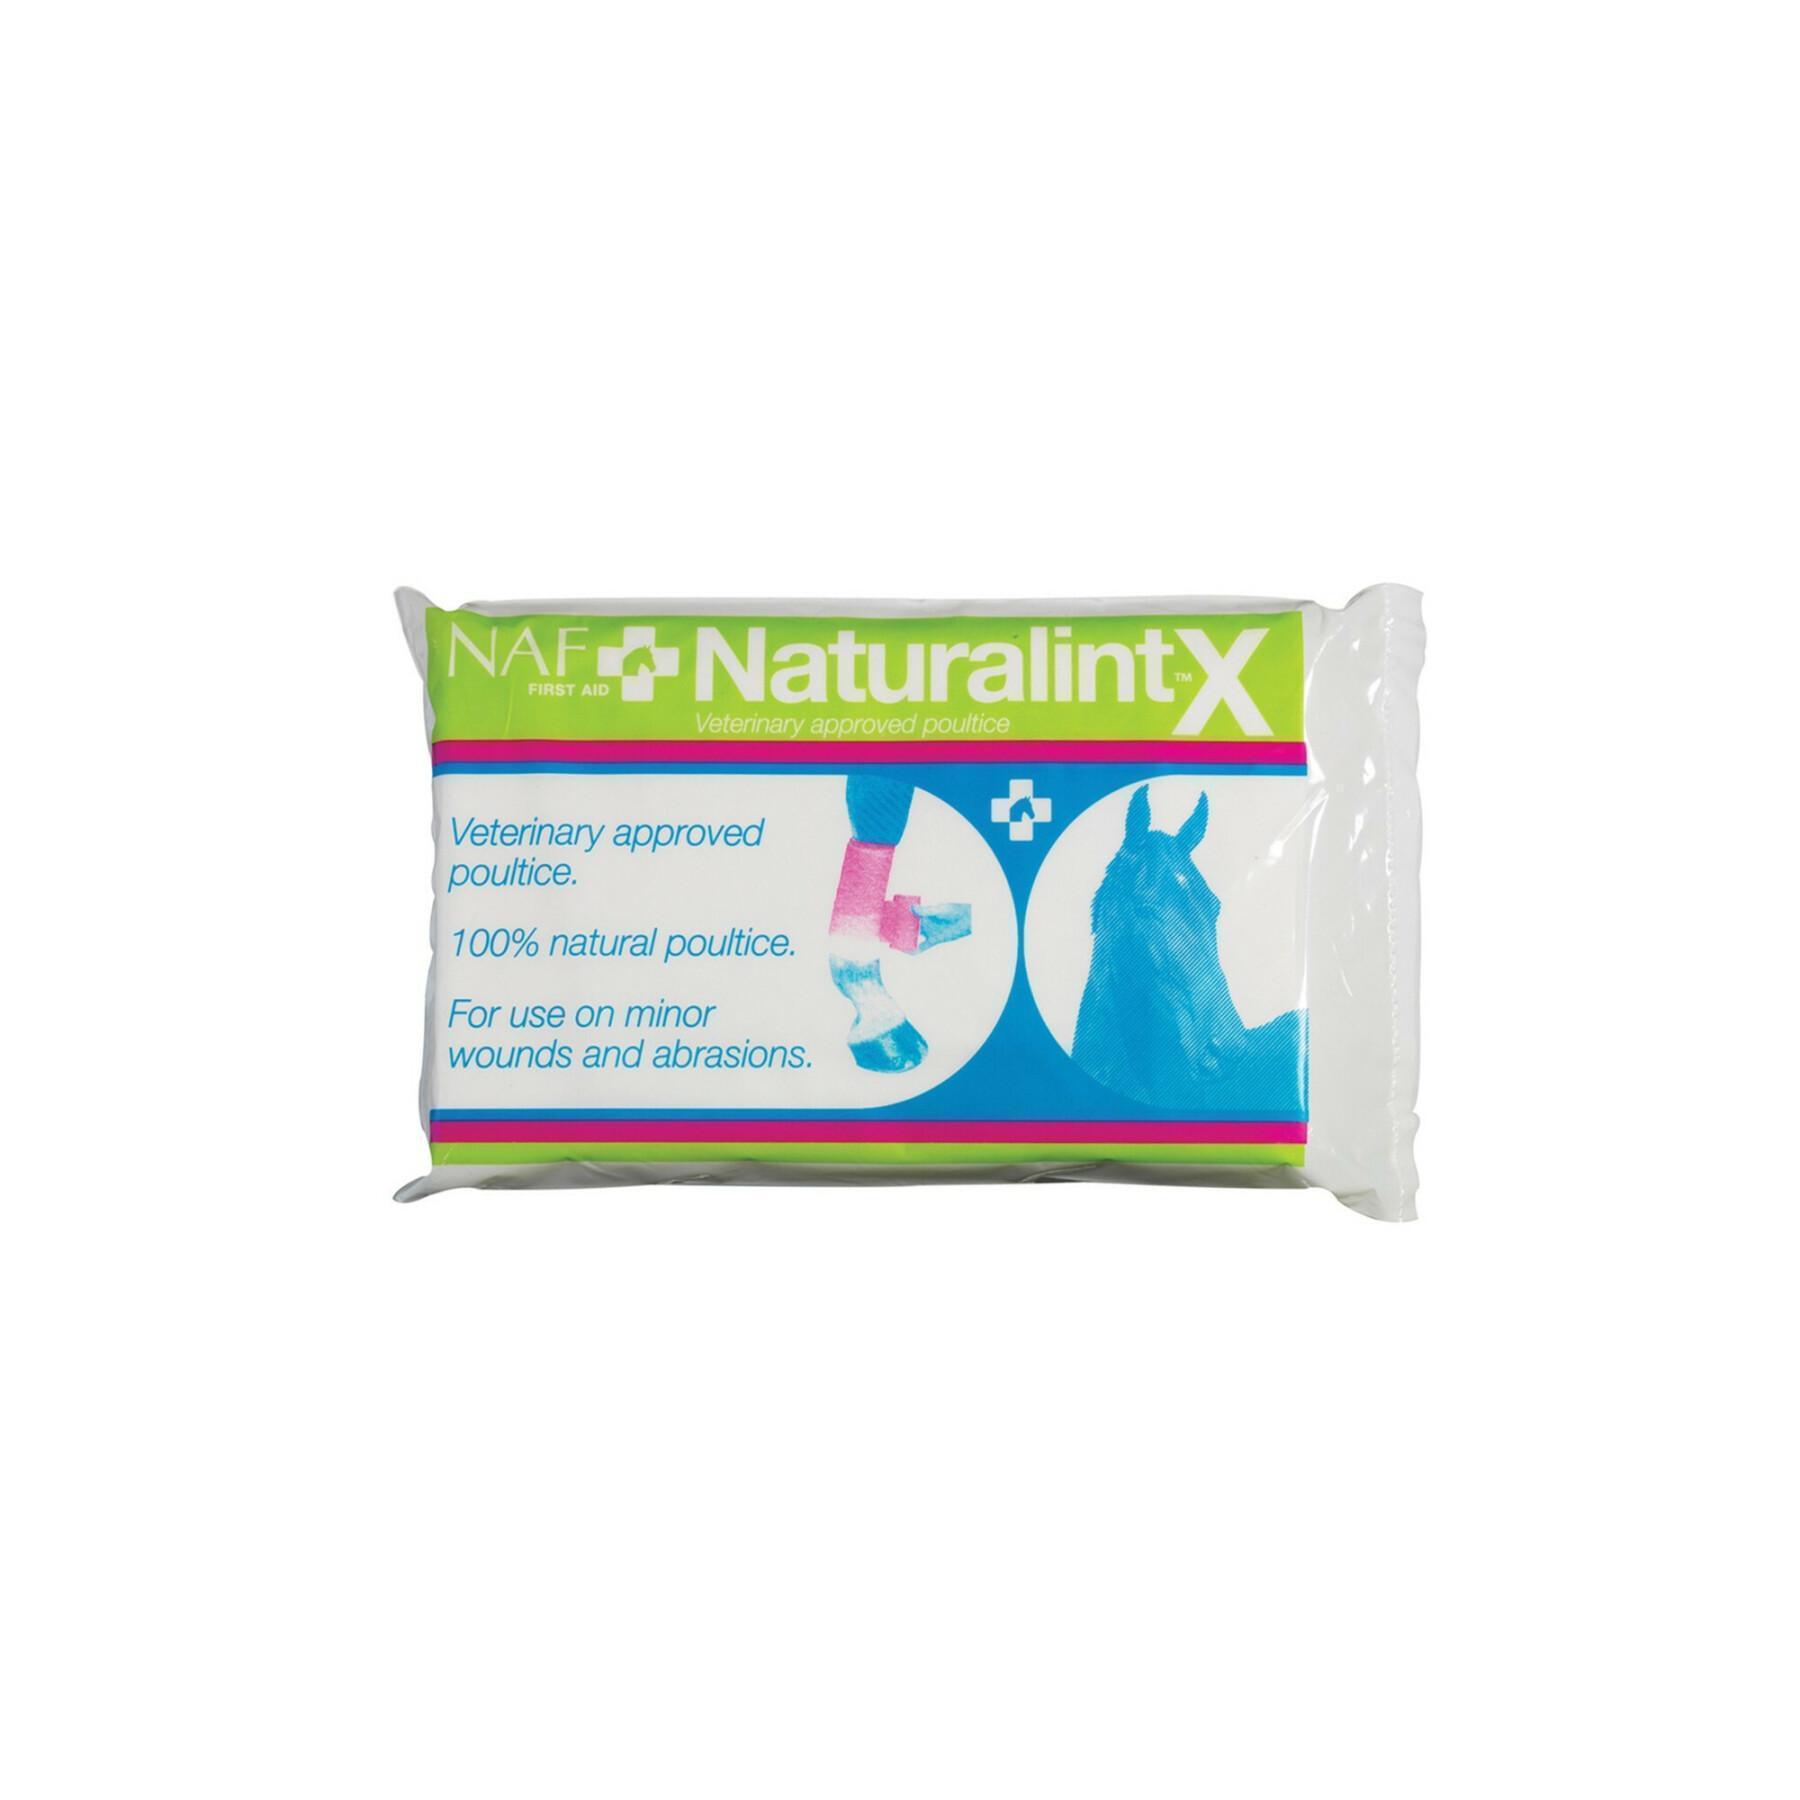 Compresse Naturalintx NAF